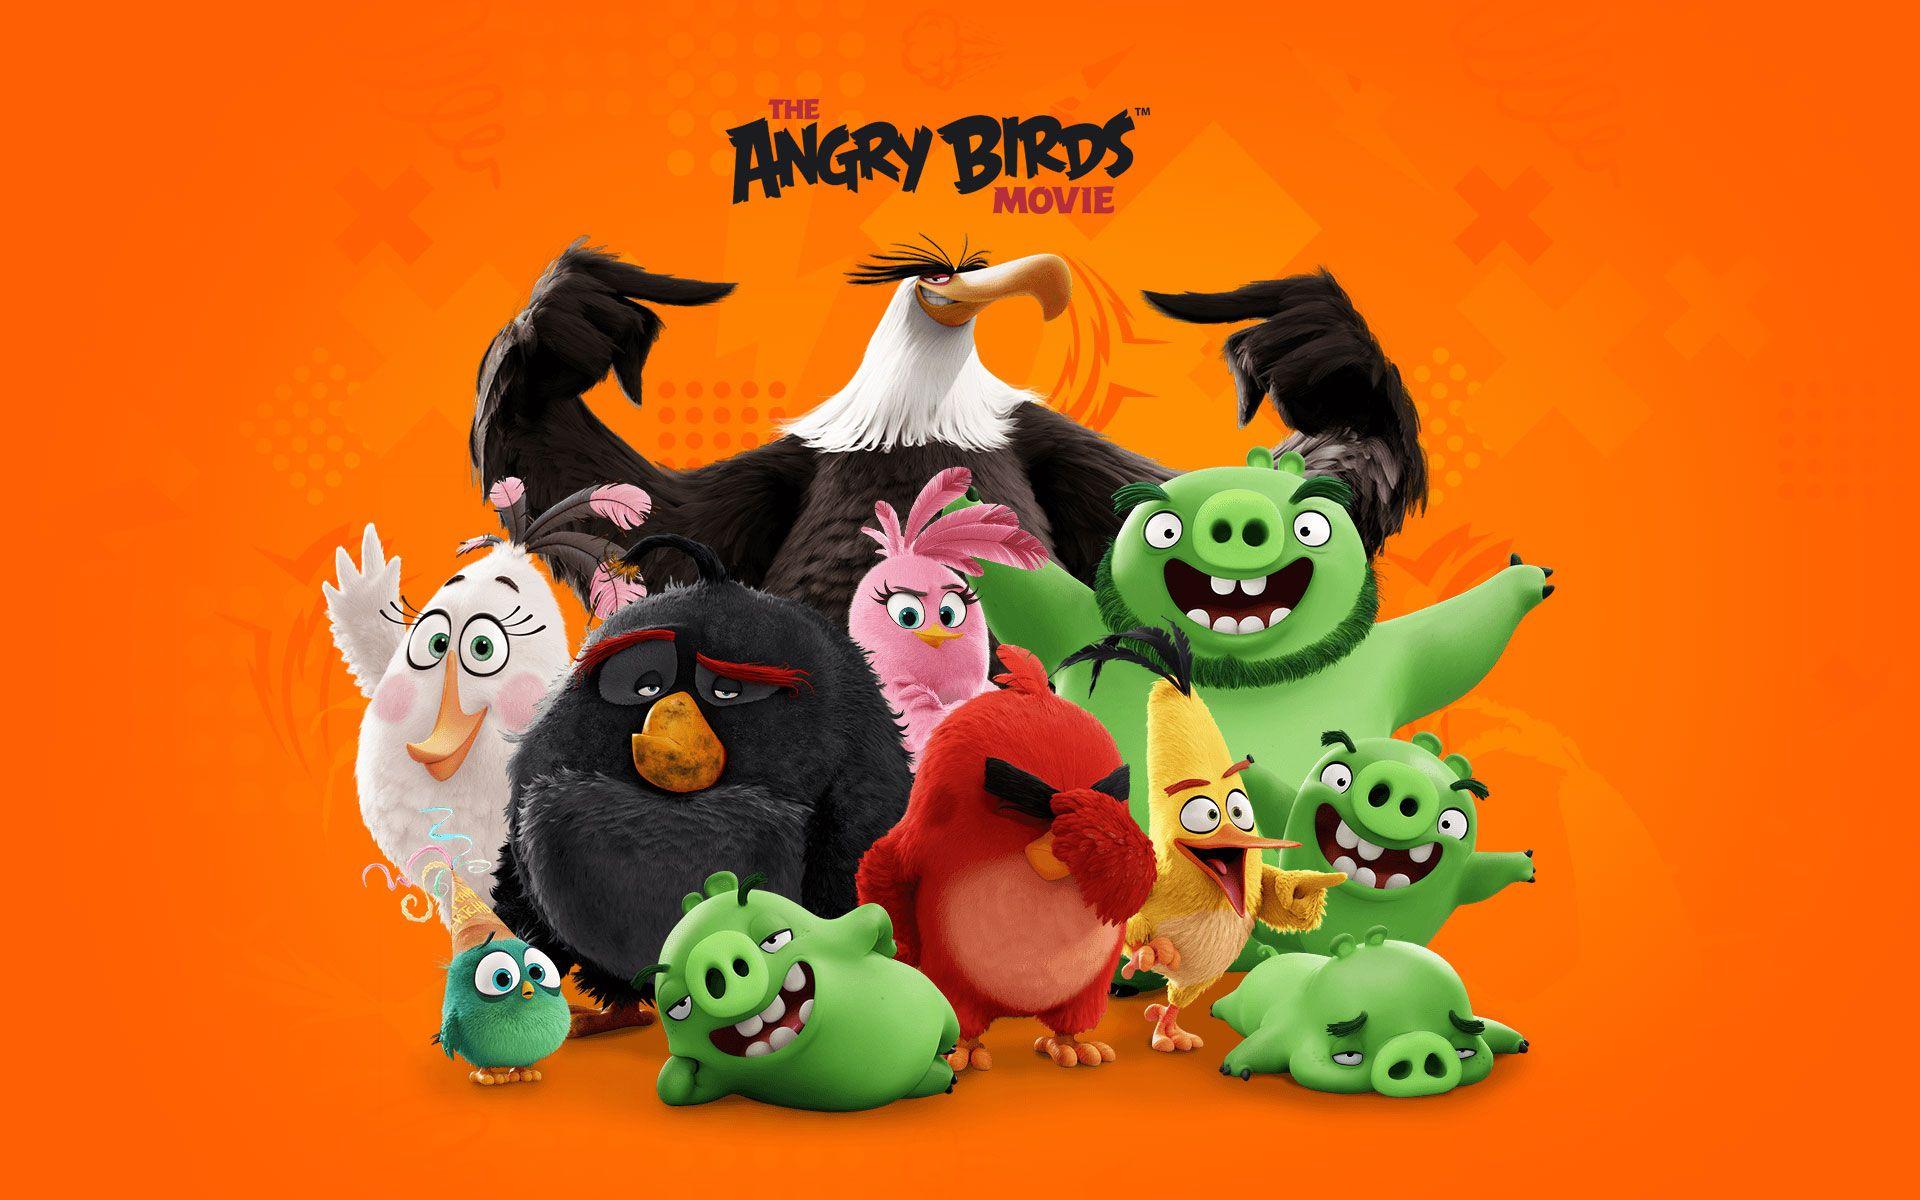 پرندگان خشمگین (Angry Birds)